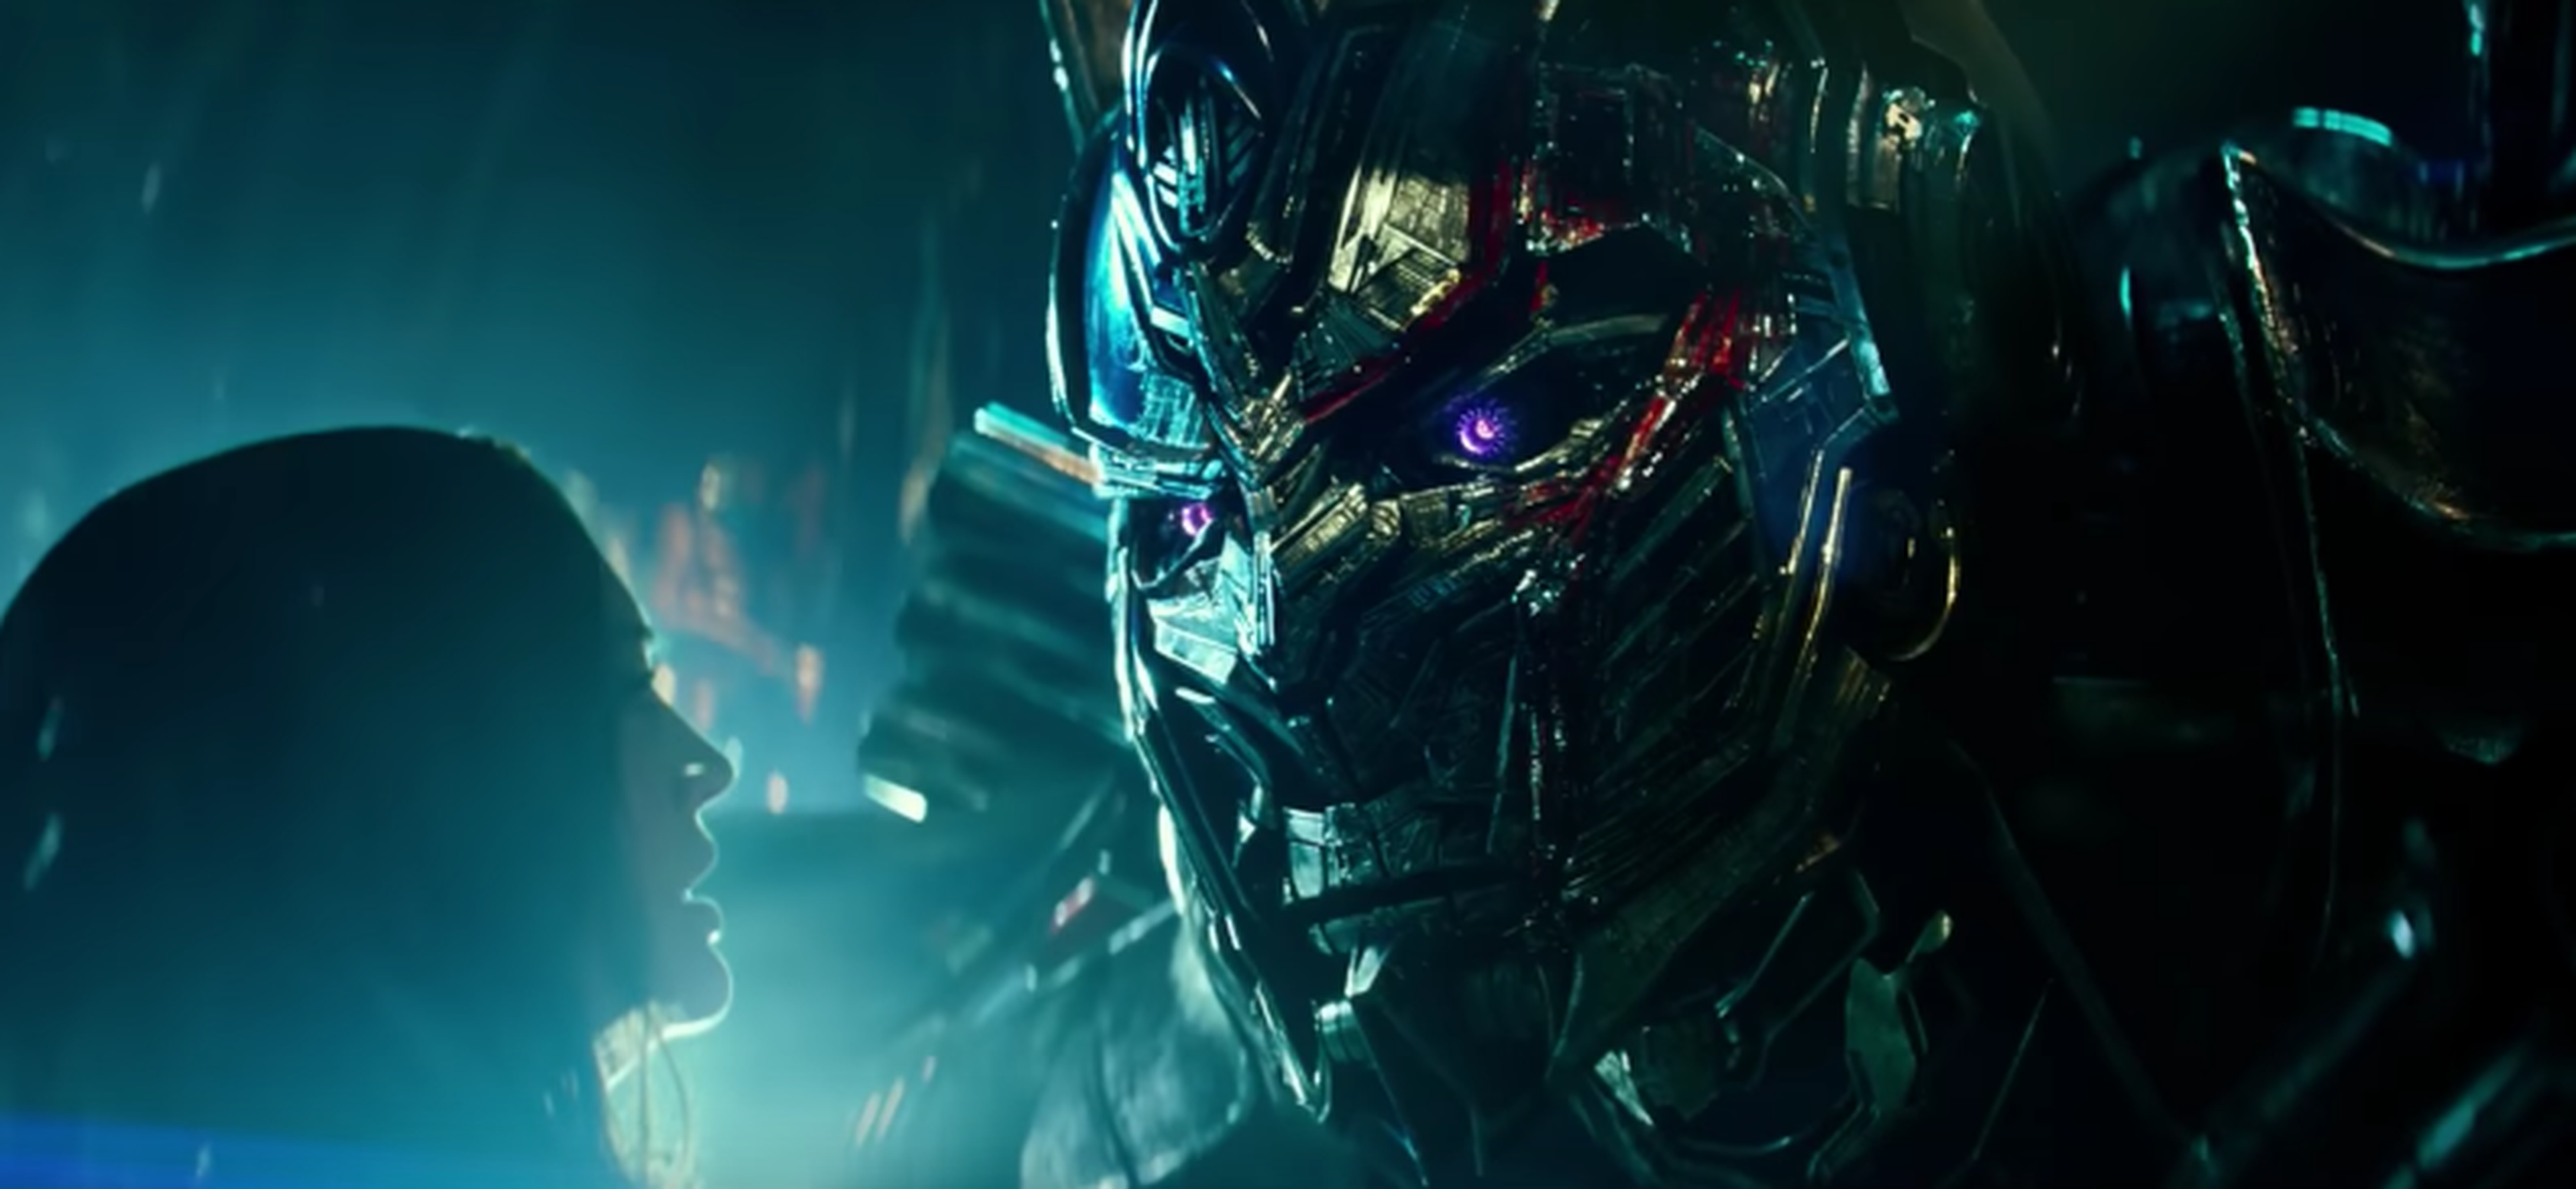 Transformers: El último caballero - Nuevo tráiler de la quinta entrega de la franquicia dirigida por Michael Bay